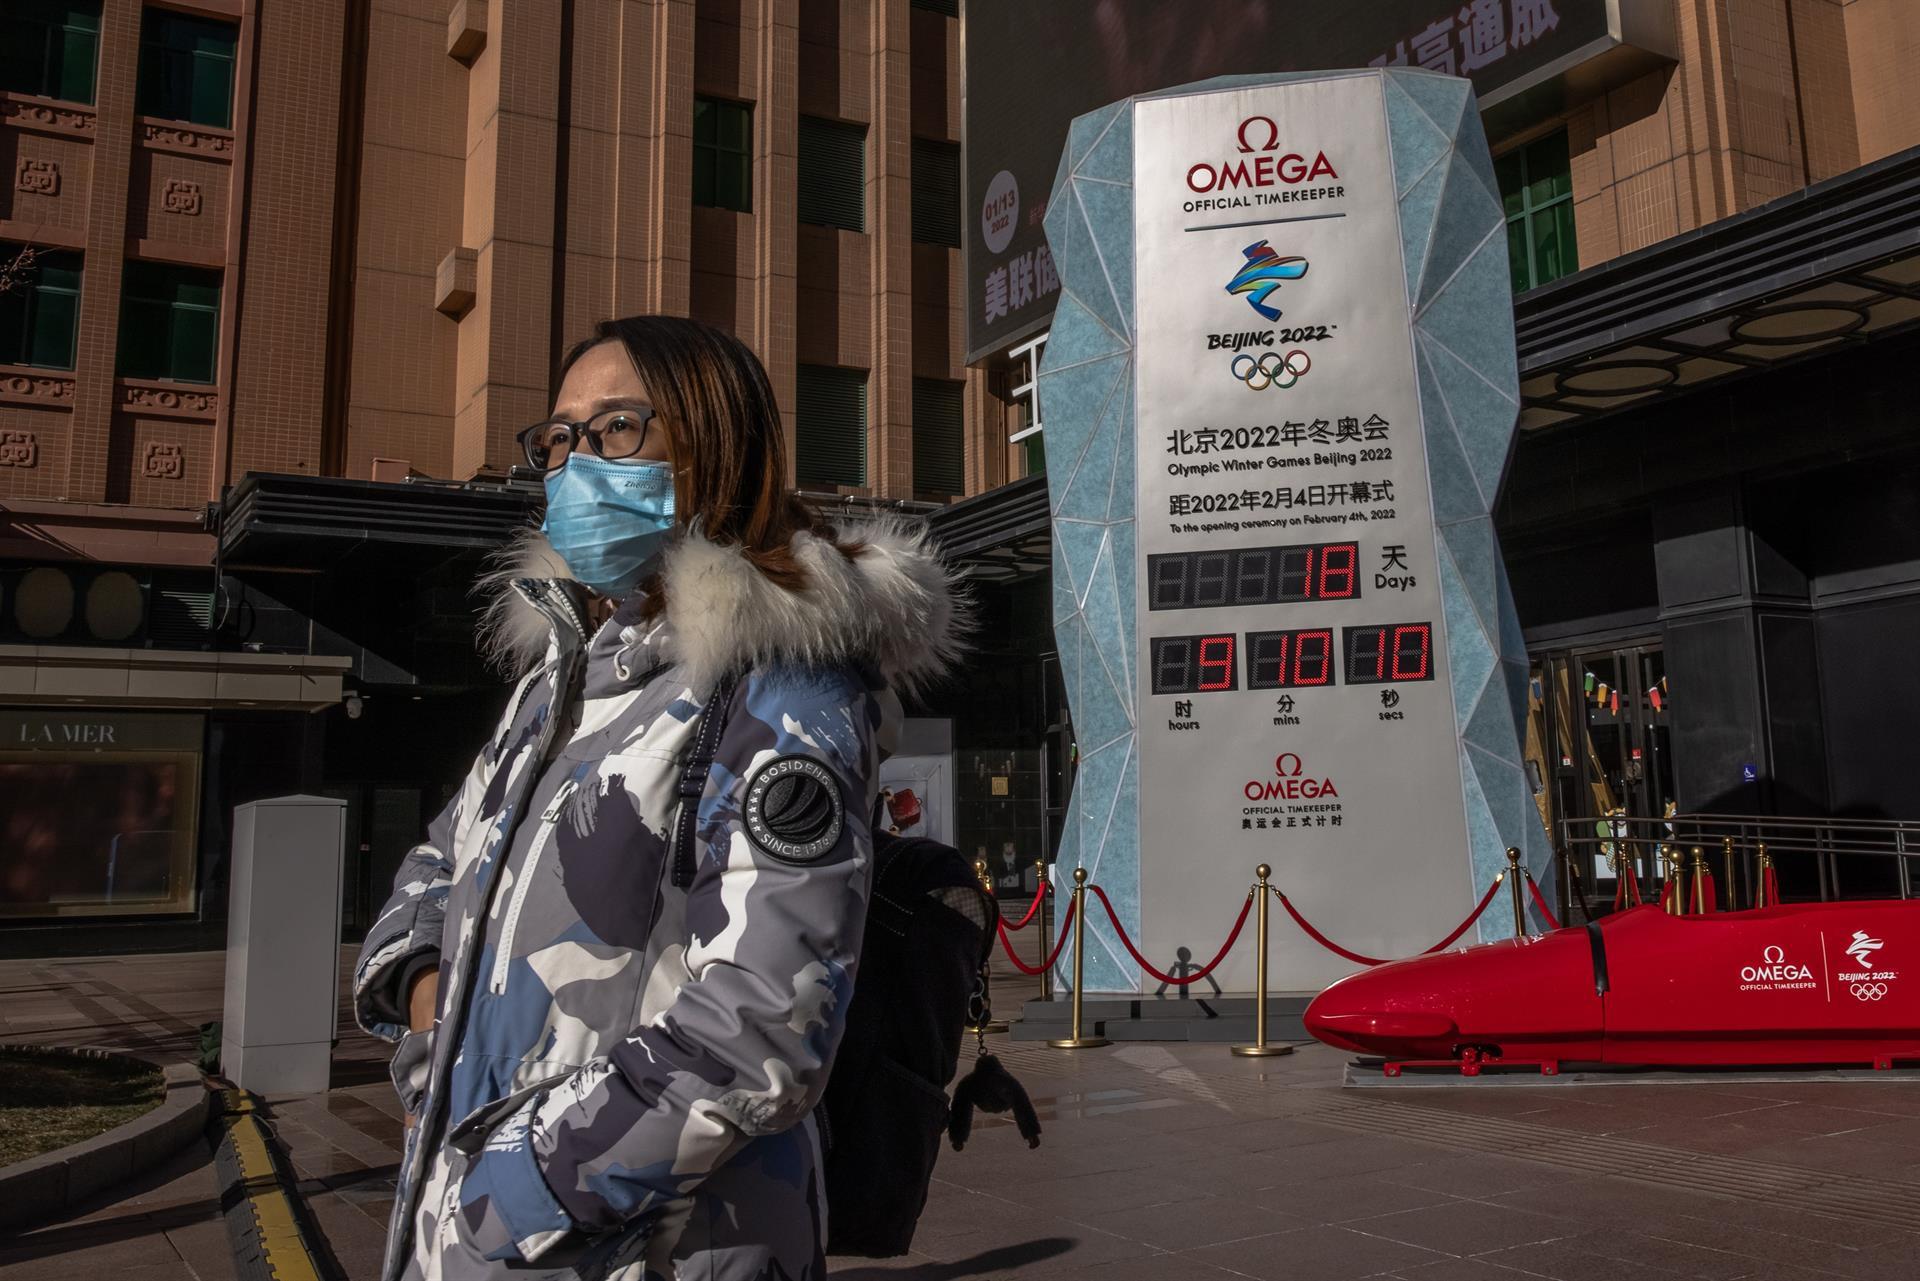 Avanço da Covid-19 na China suspende venda de ingressos para Olimpíada de Inverno